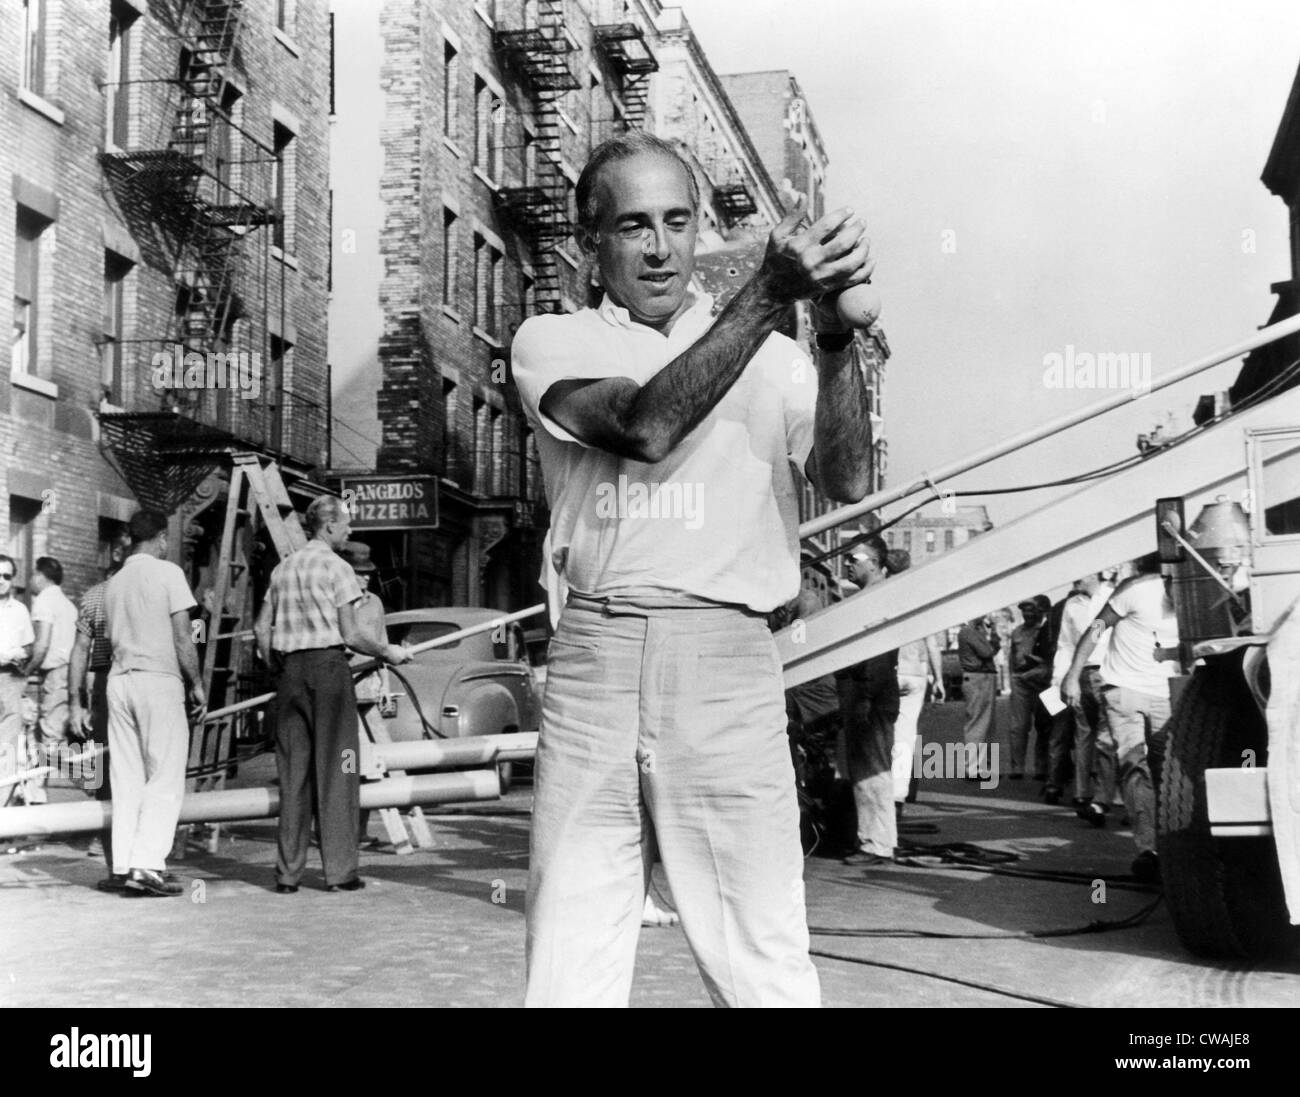 WEST SIDE STORY, coreografo e co-direttore Jerome Robbins, sul set, 1961.. La cortesia: CSU Archivi / Everett Collection Foto Stock